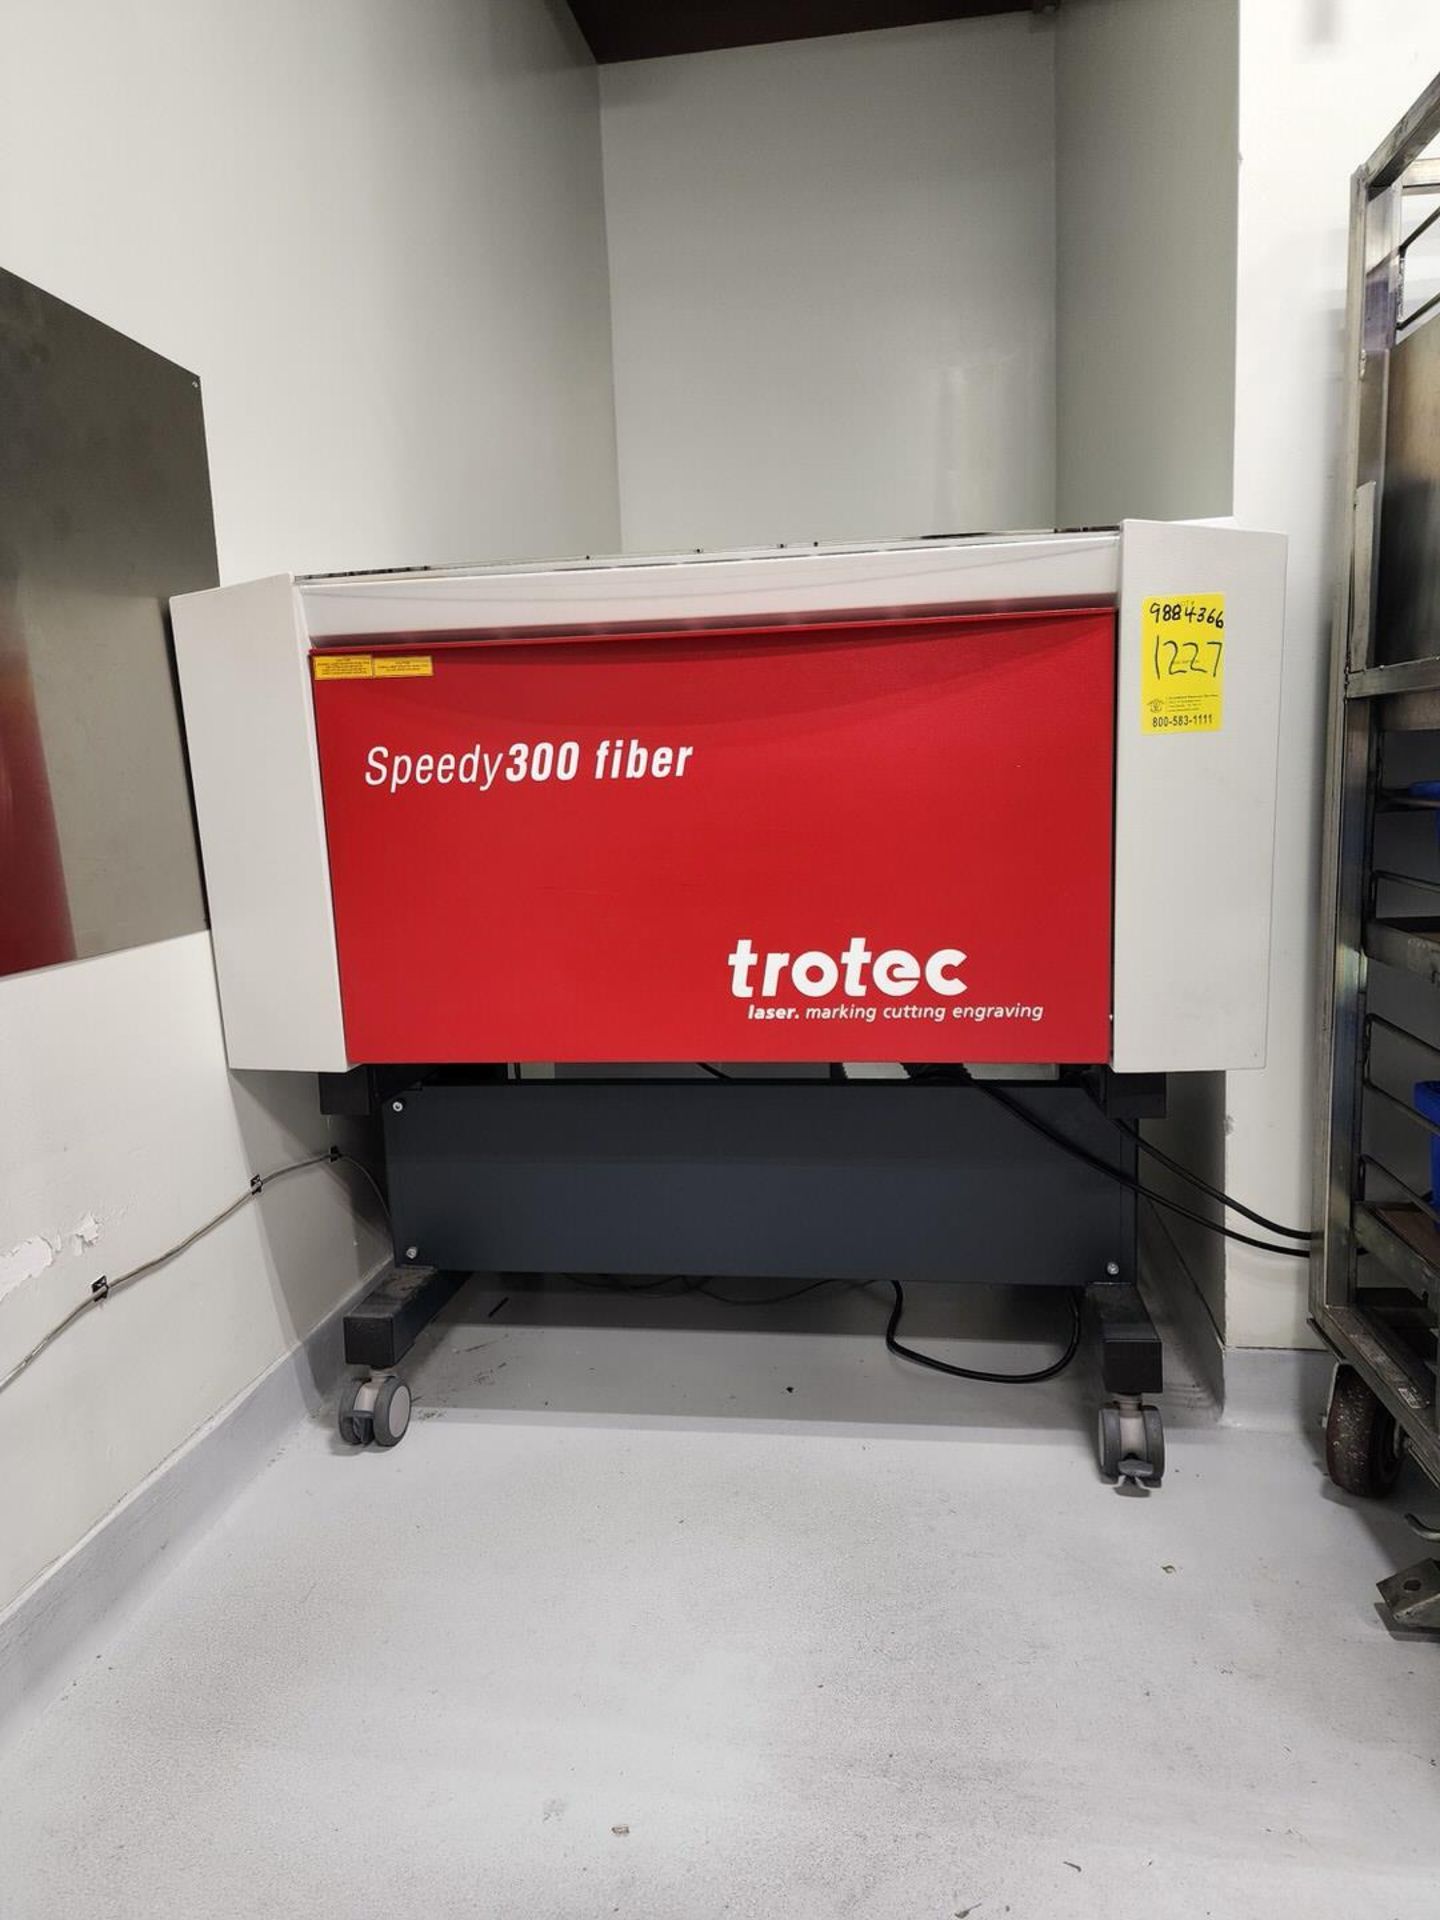 Trotec Speedy 300 Fiber Laser Marking Cutting Engraving Machine (Asset# 9884366) - Image 8 of 8